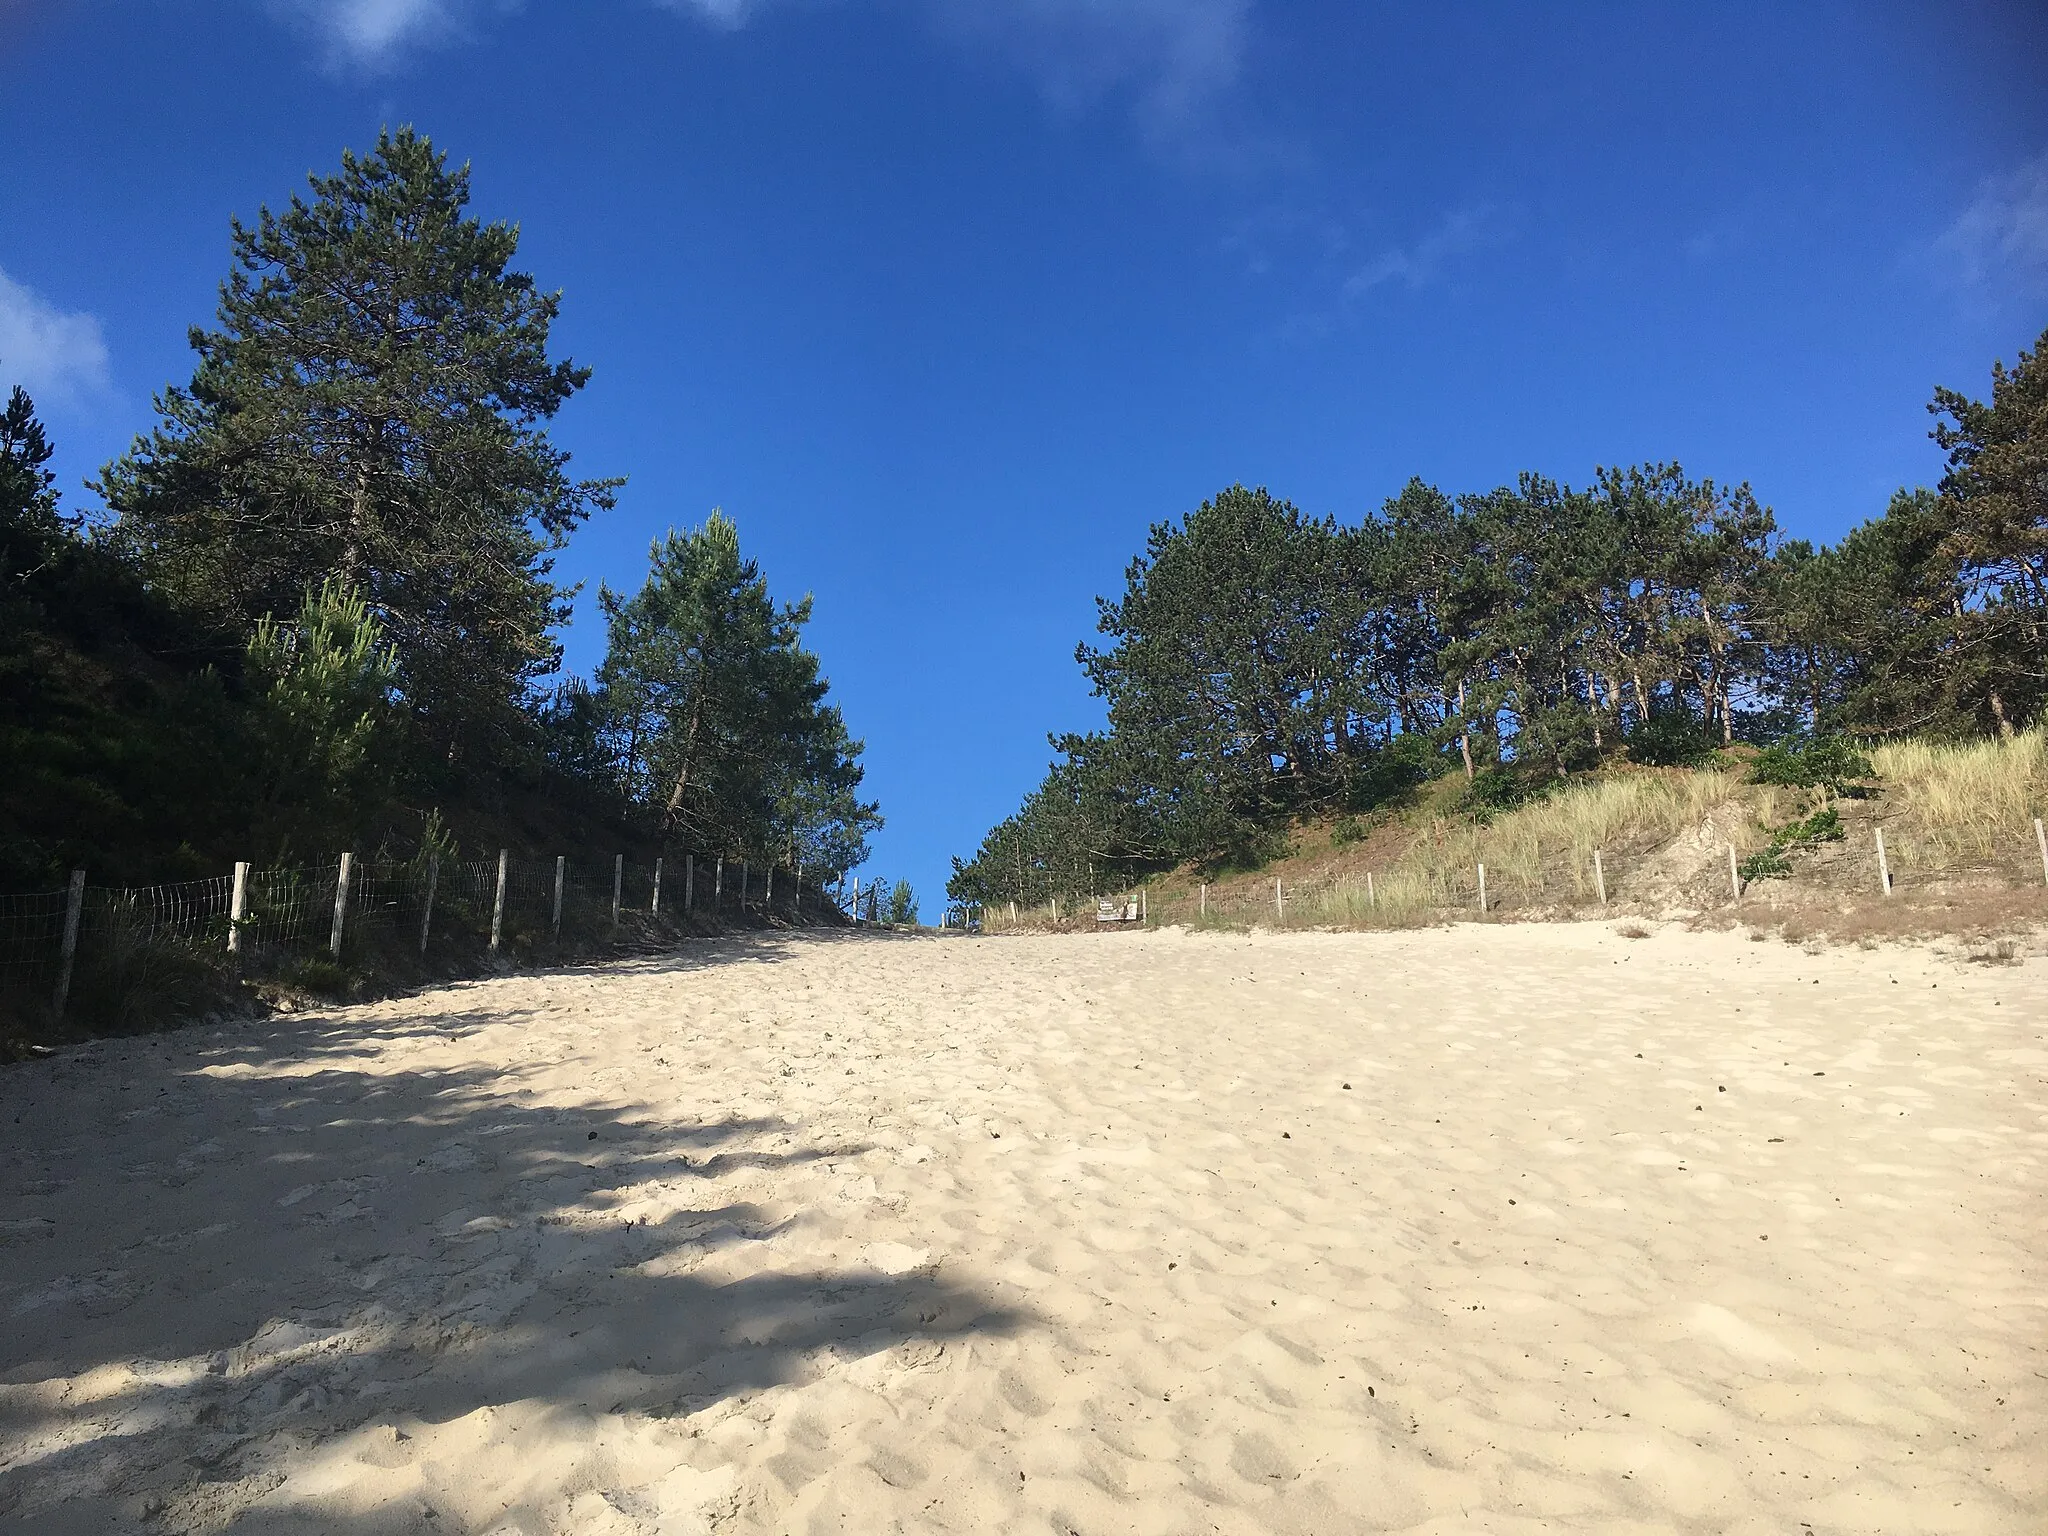 Photo showing: De duinen van Schoorl, aan het begin is er zand en als je meer naar boven kijkt zie je bomen en blauwe lucht.